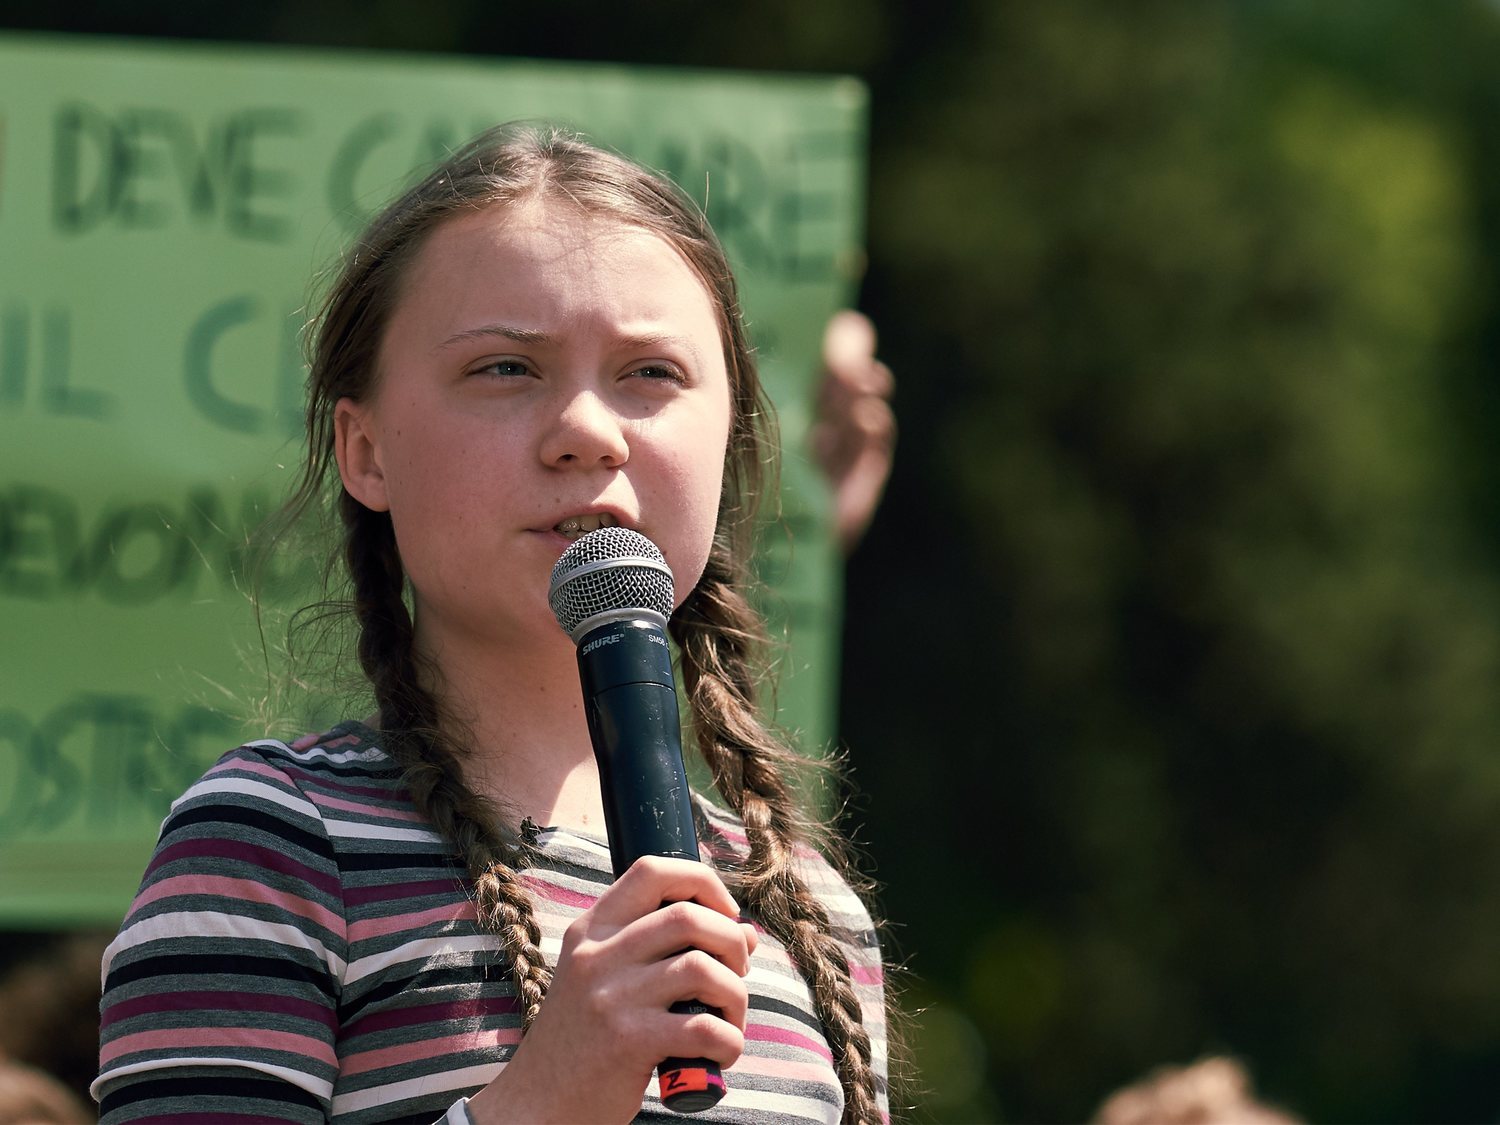 Depresión y bullying: la dura infancia de la activista Greta Thunberg contada por su madre